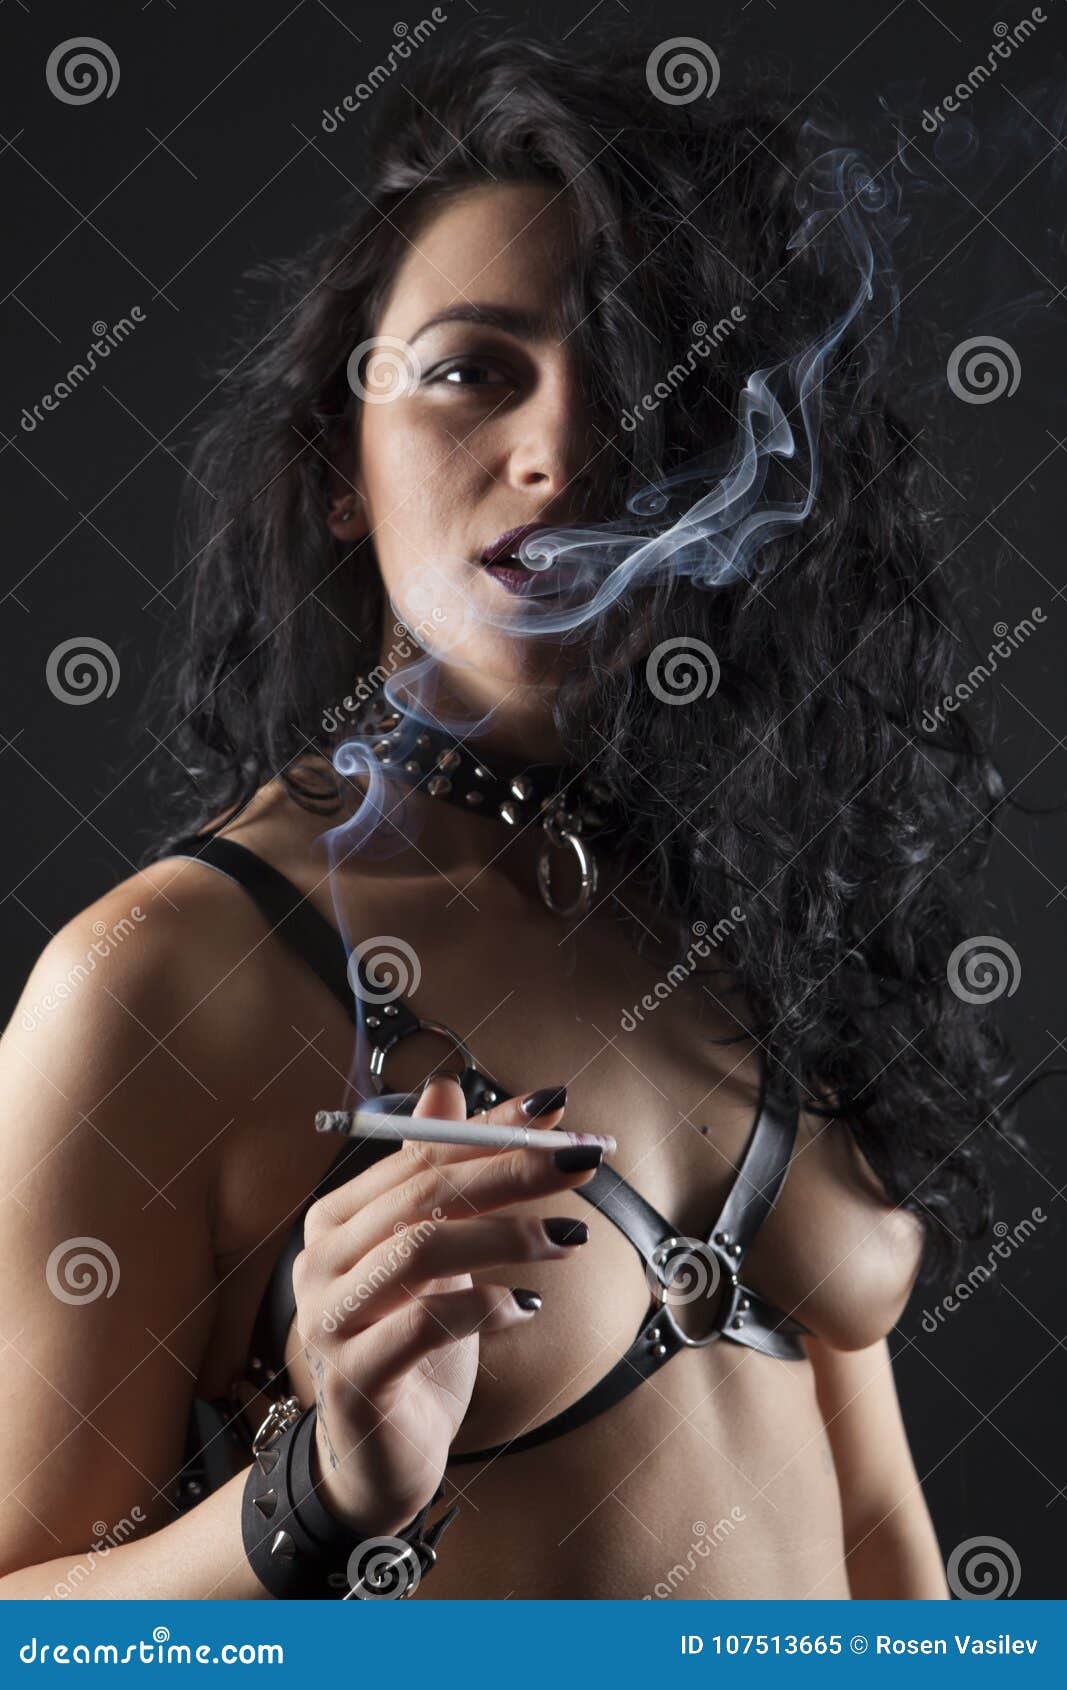 naked women smoking cigars